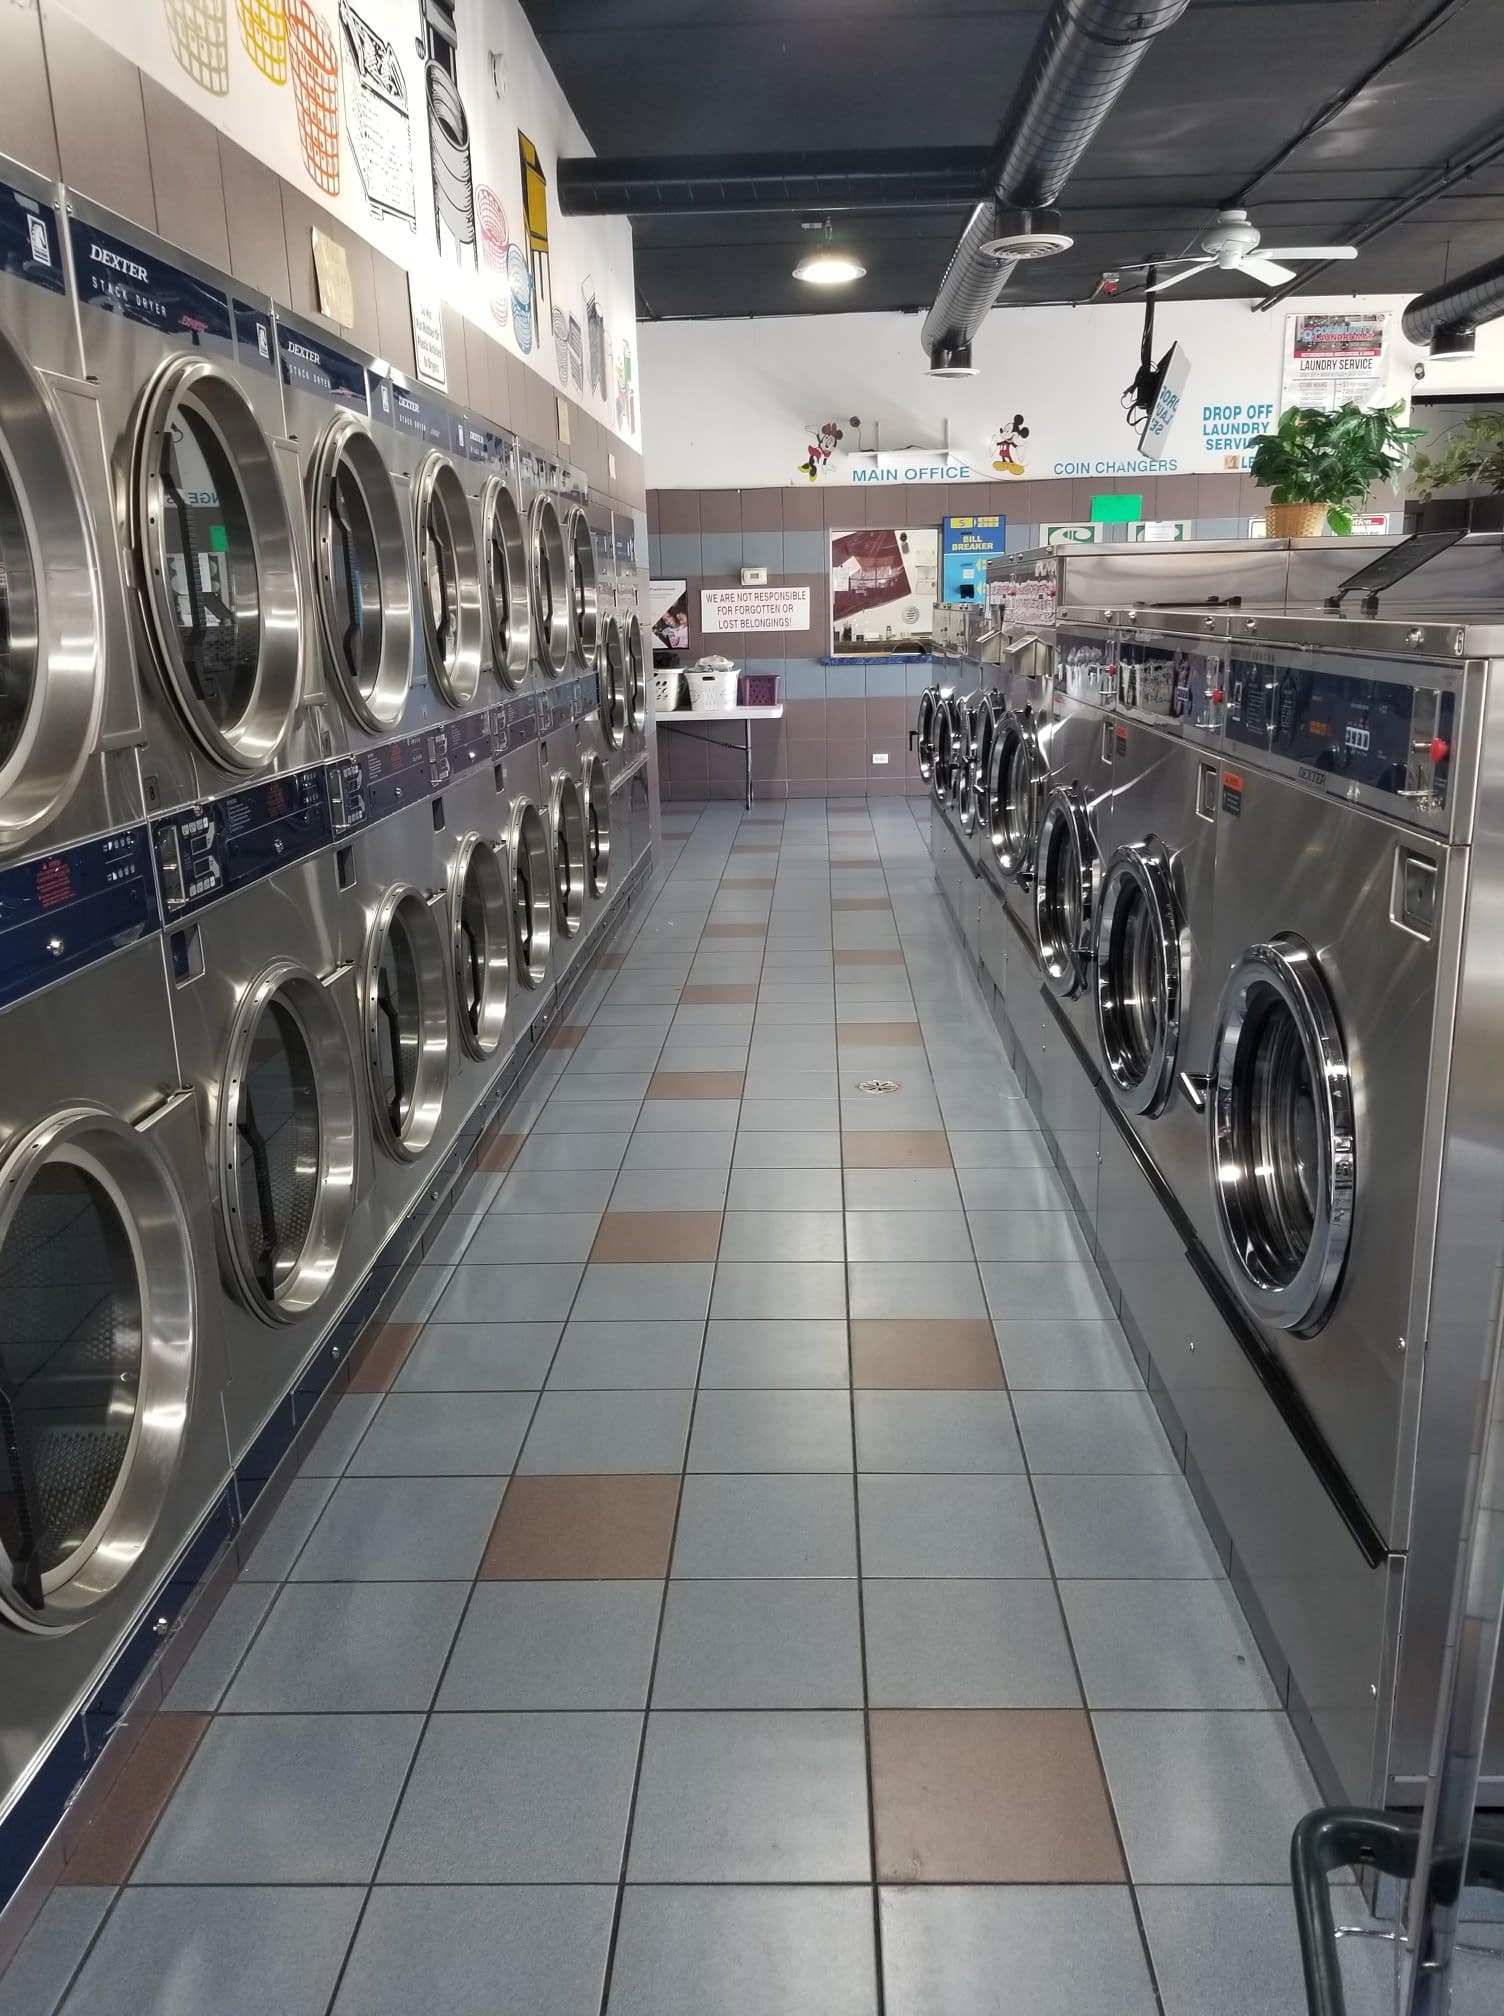 Community Laundromat - North Chicago, IL, US, 24hr laundromat near me